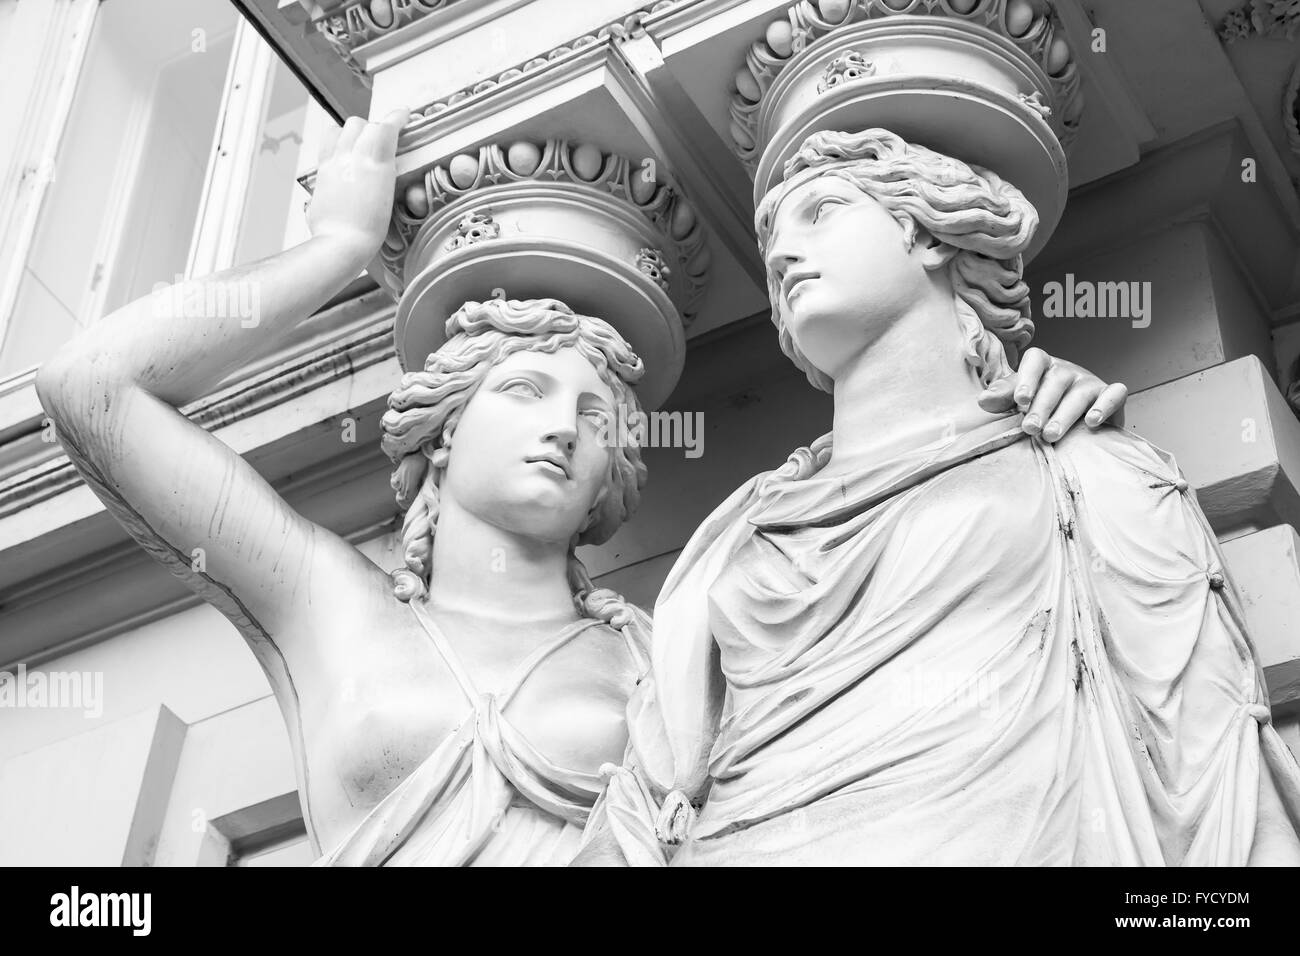 Karyatide. Statuen von zwei jungen Damen in Form eleganten Säulen, die eine Säulenhalle, Josefsplatz, in Wien. Schwarz / weiß Foto Stockfoto